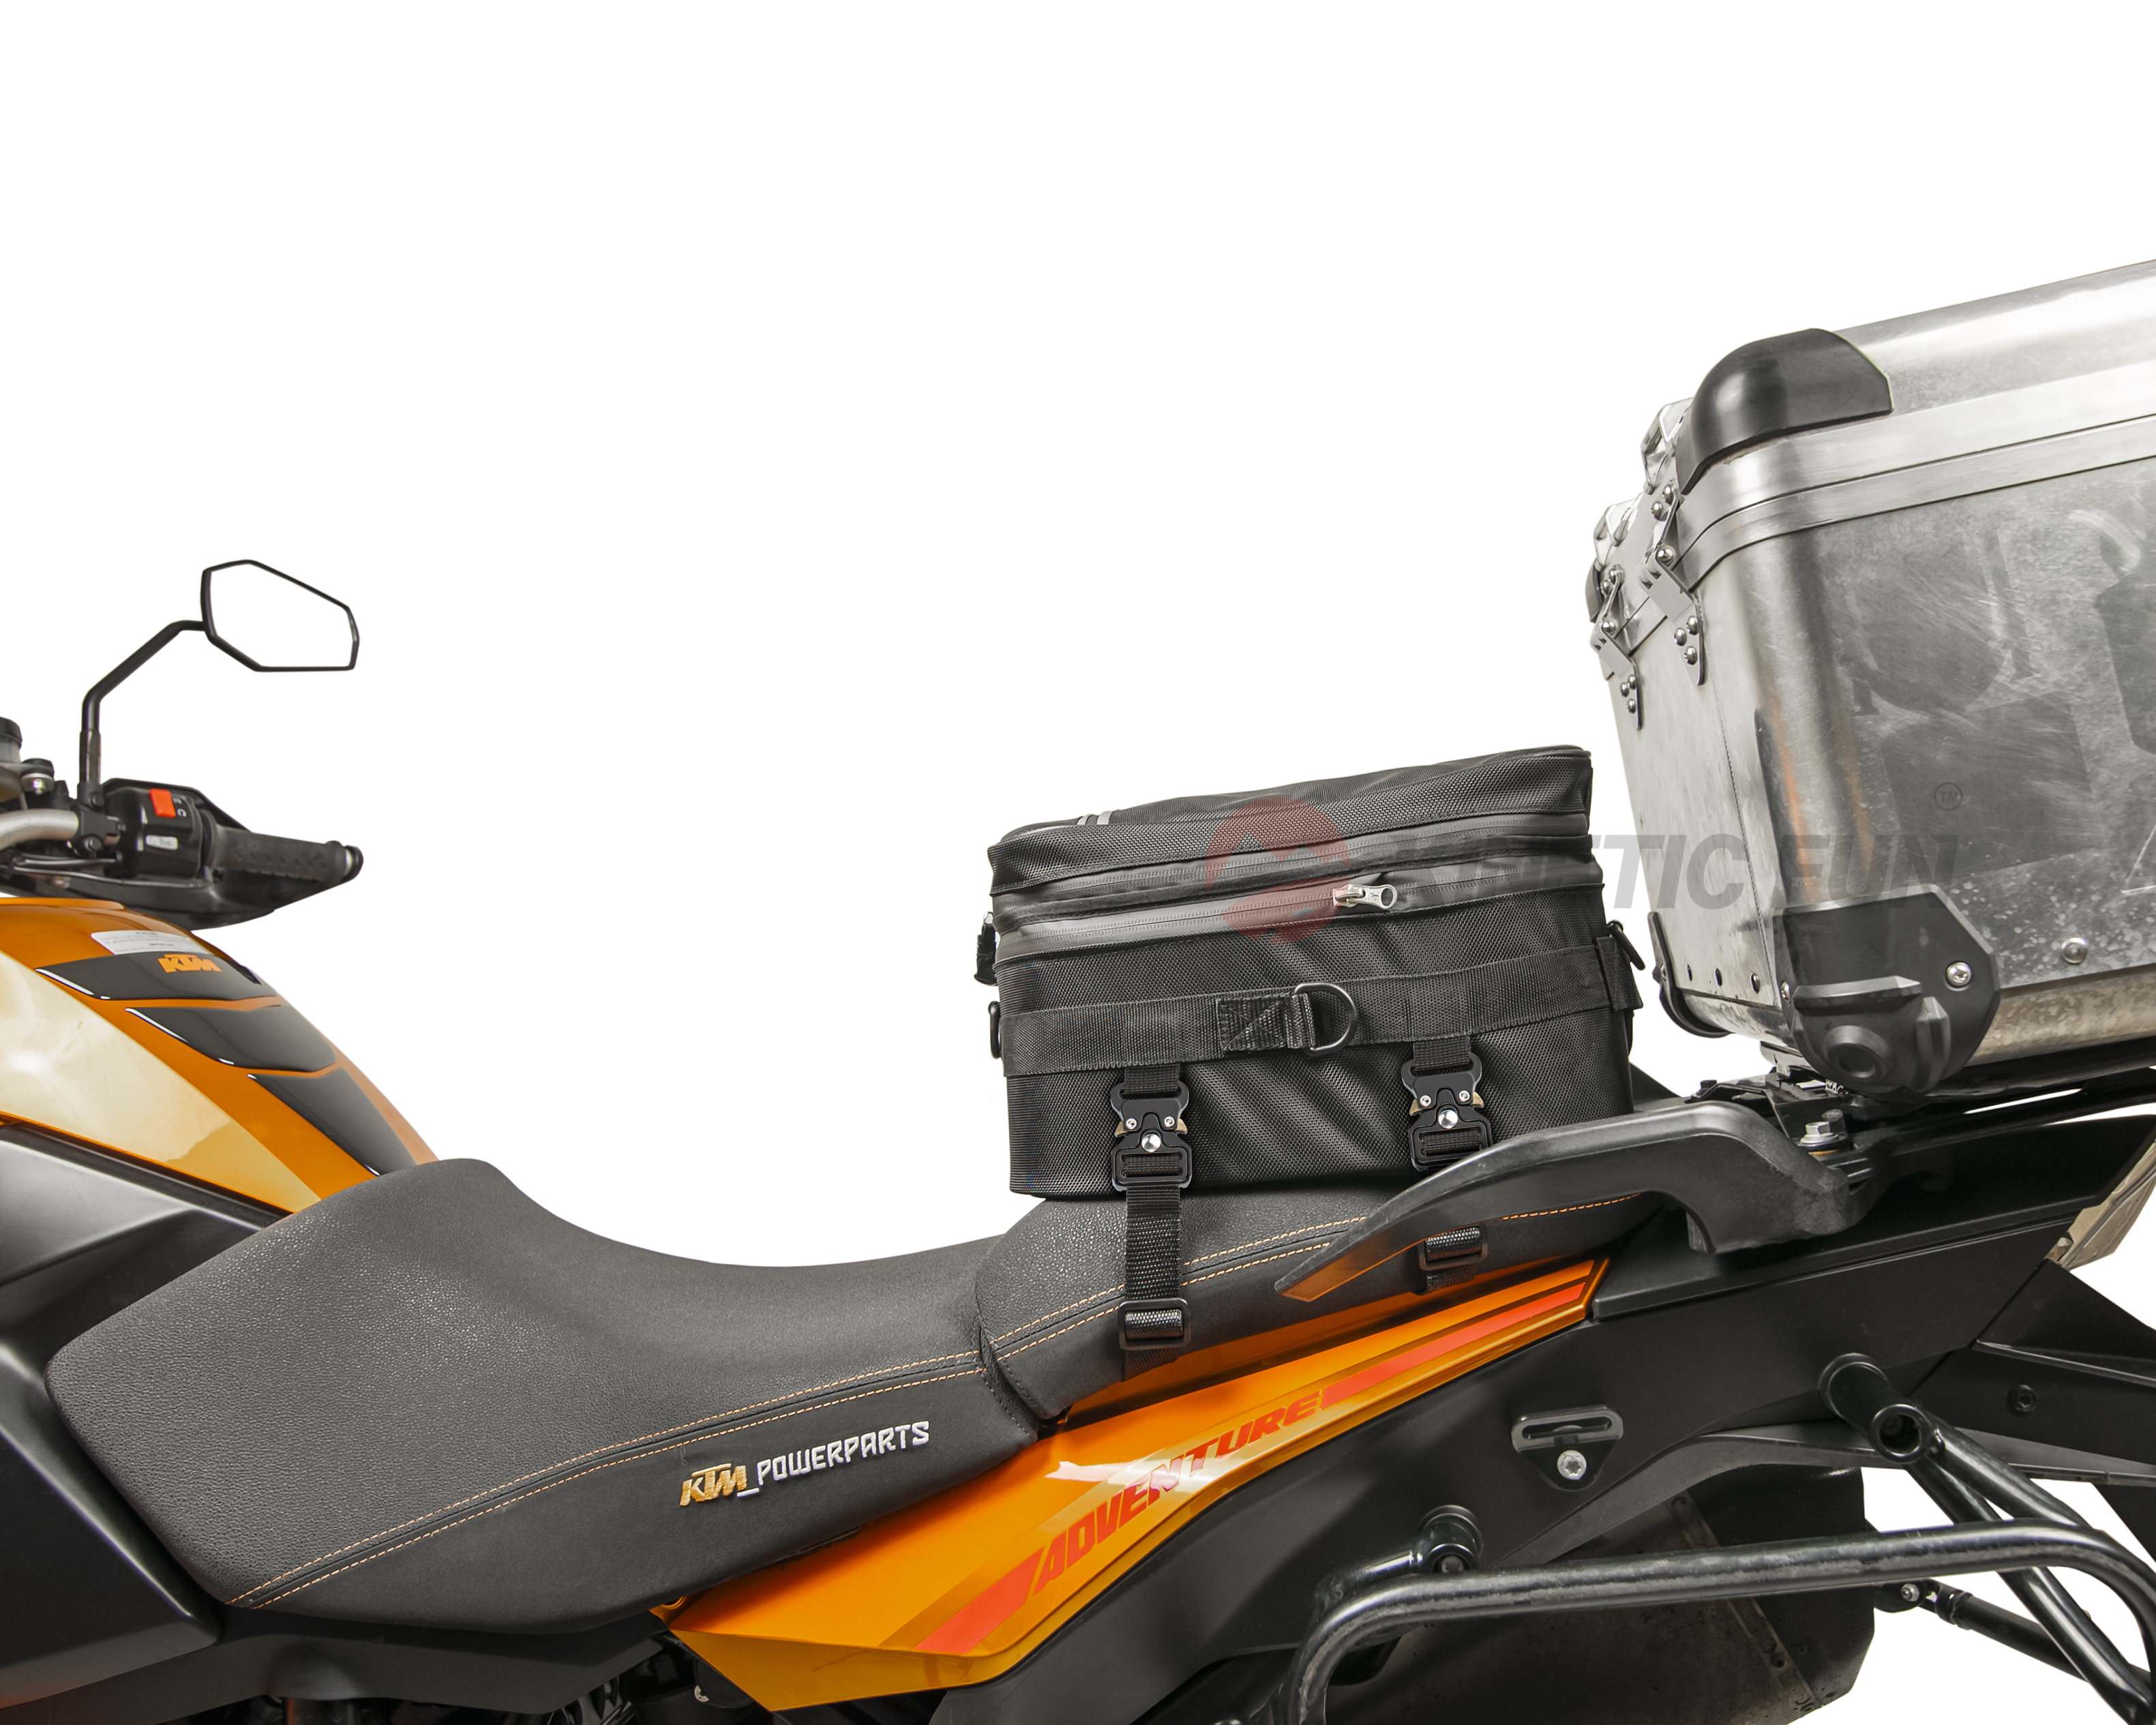 Сумка для мотоцикла Honda CRF 450 L - седельная Touring, объём 12-20 литров